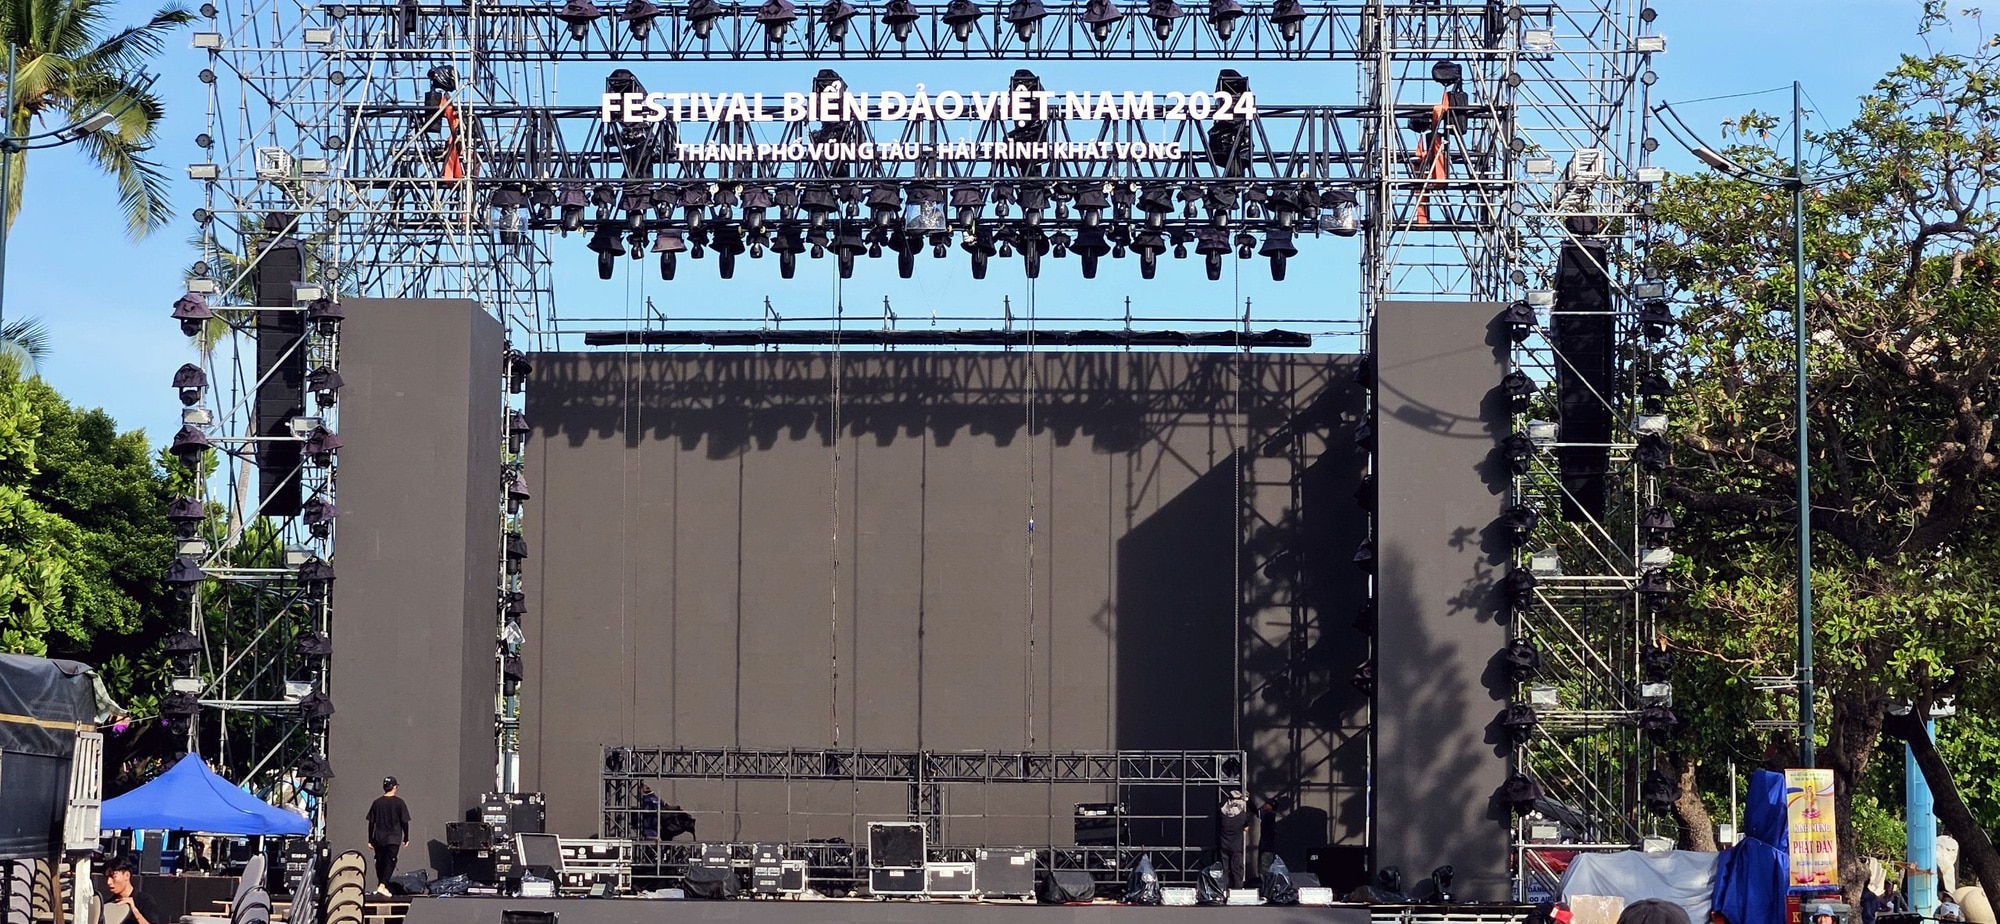 Sân khấu đêm ca nhạc 'Hải trình khát vọng' - điểm nhấn của 'Festival biển đảo Việt Nam 2024' tại Vũng Tàu đã dựng gần như xong trên đường Quang Trung - Ảnh: ĐÔNG HÀ